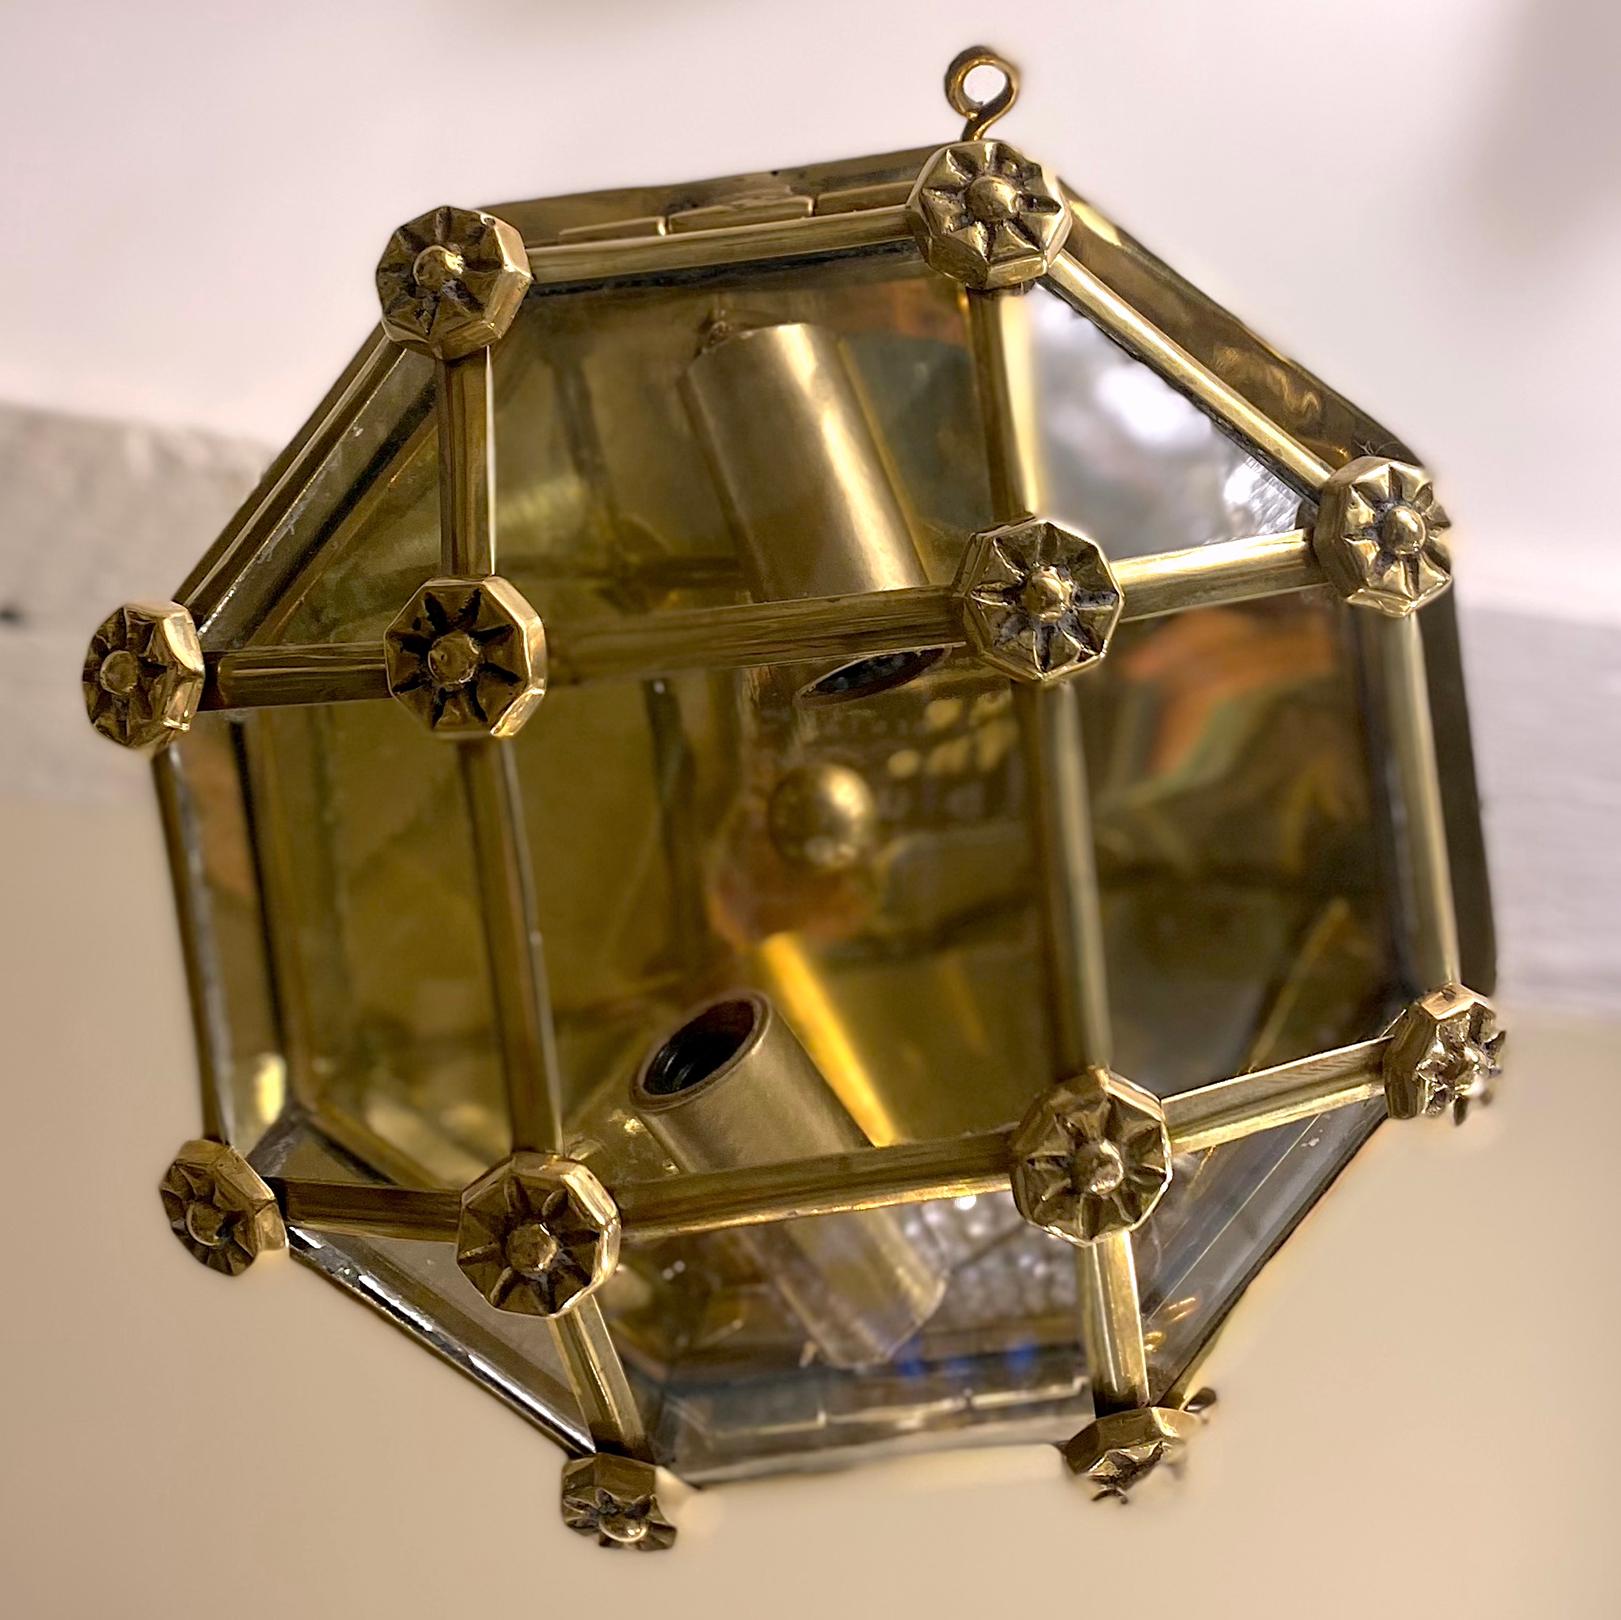 Ensemble de douze luminaires octogonaux encastrés de style nautique, datant des années 1940, avec inserts en verre et deux lumières intérieures. Vendu à l'unité.

Mesures :
Diamètre : 8